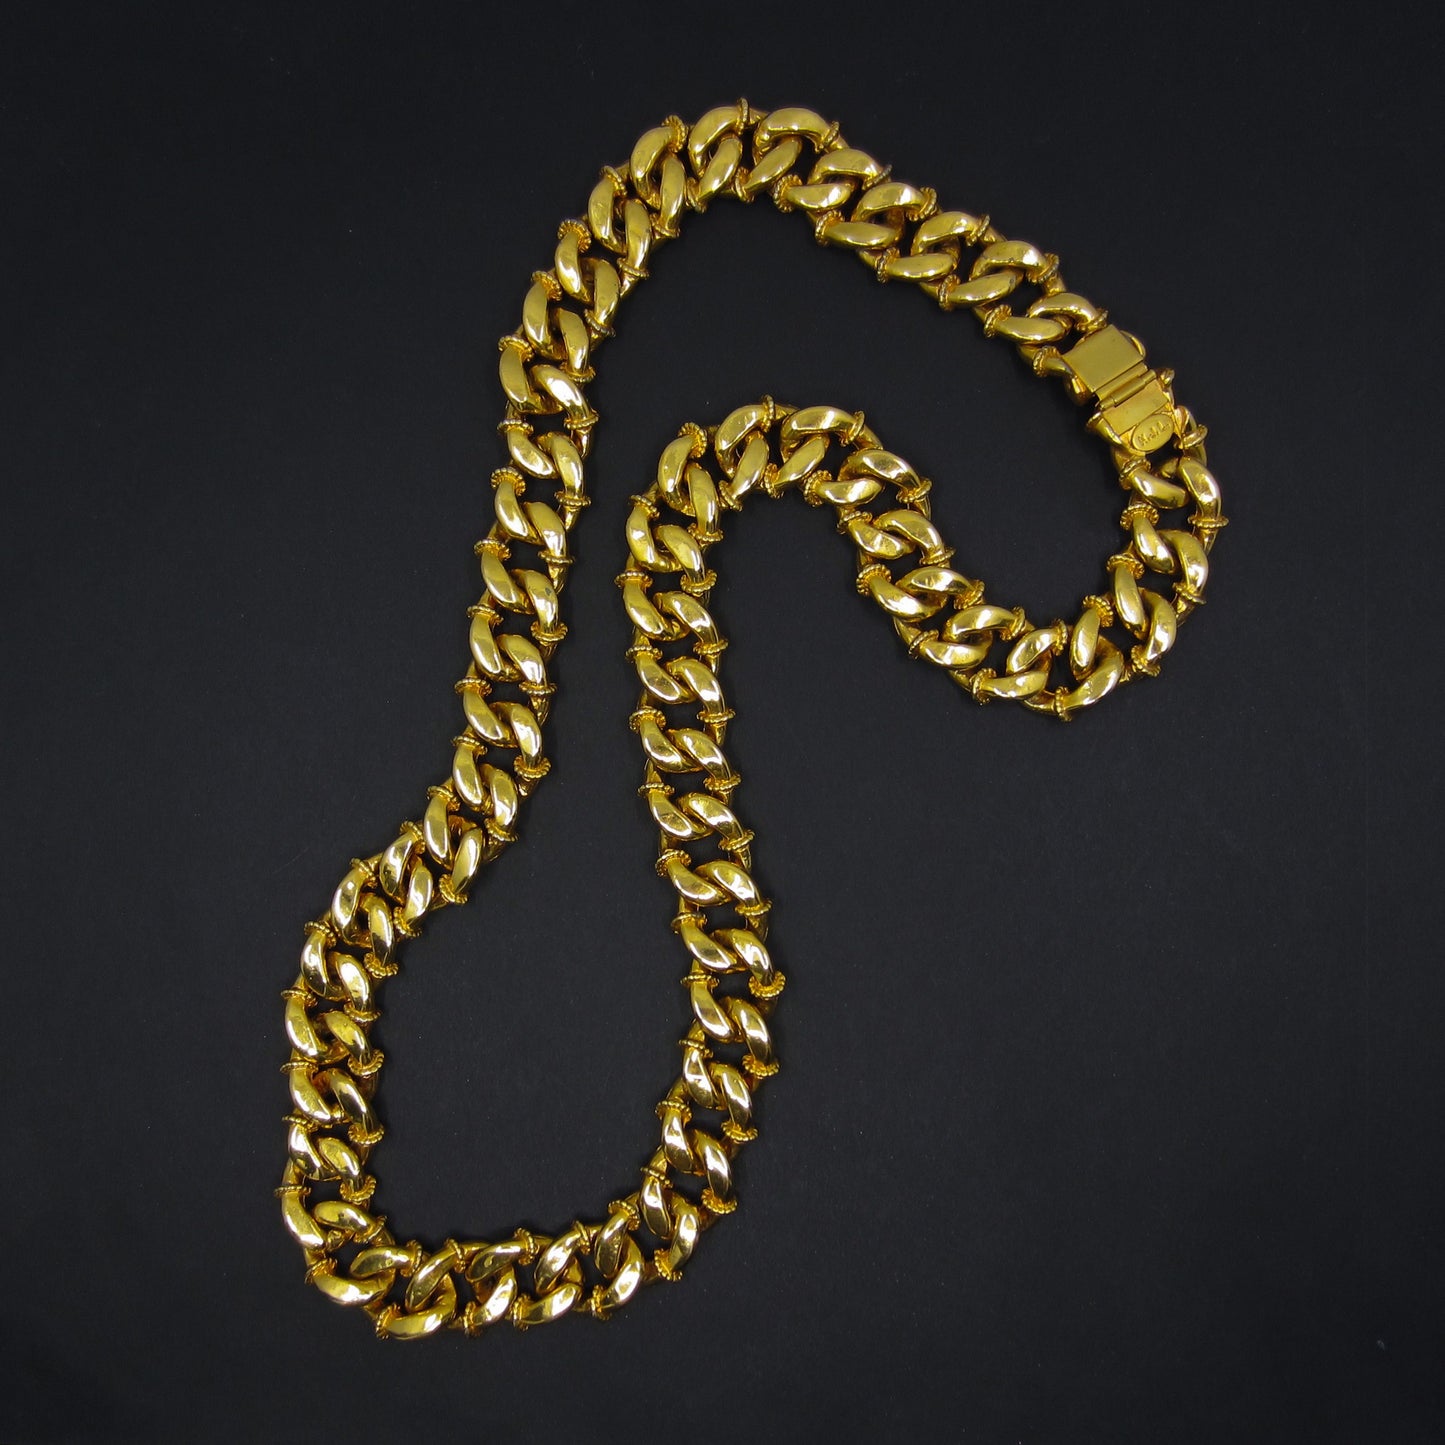 SOLD--Vintage Massive KJL Crystal Curb Link Chain Gold Plate c 1960’s